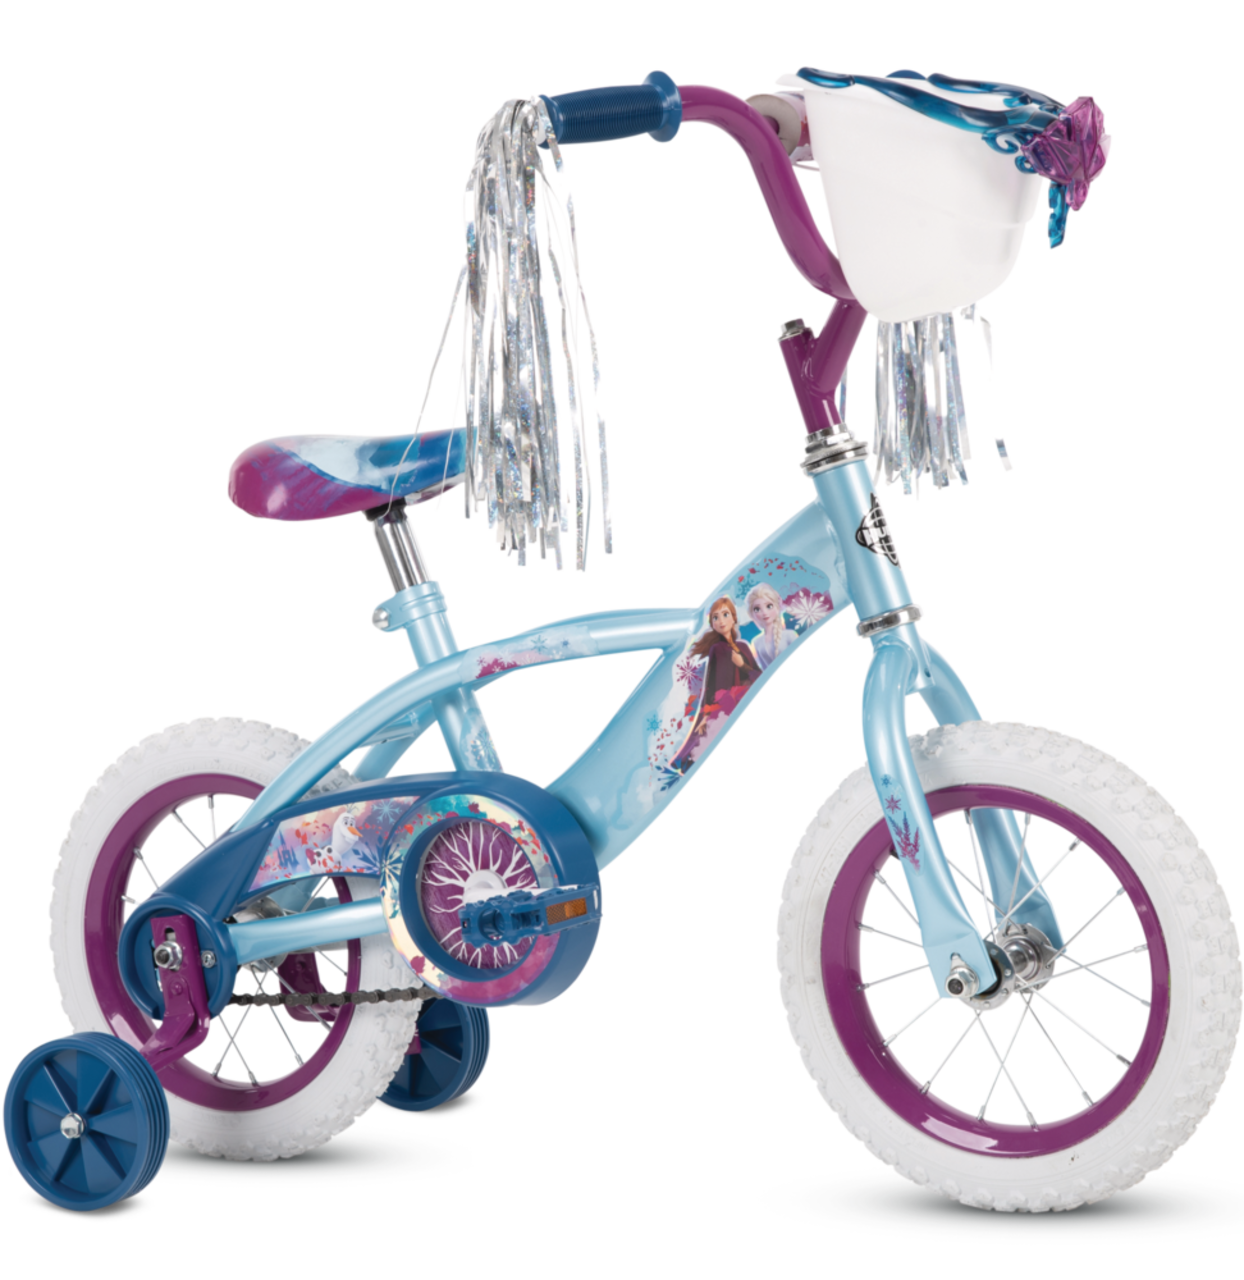 Vélos filles :: Vélos filles 12 po :: Vélo enfant Disney La reine des neiges  2 - fille - 12 po - bleu/mauve - assemblé à 95% [CLONE] - Vélos pour  enfants - Garantie des prix les plus bas - Livraison gratuite